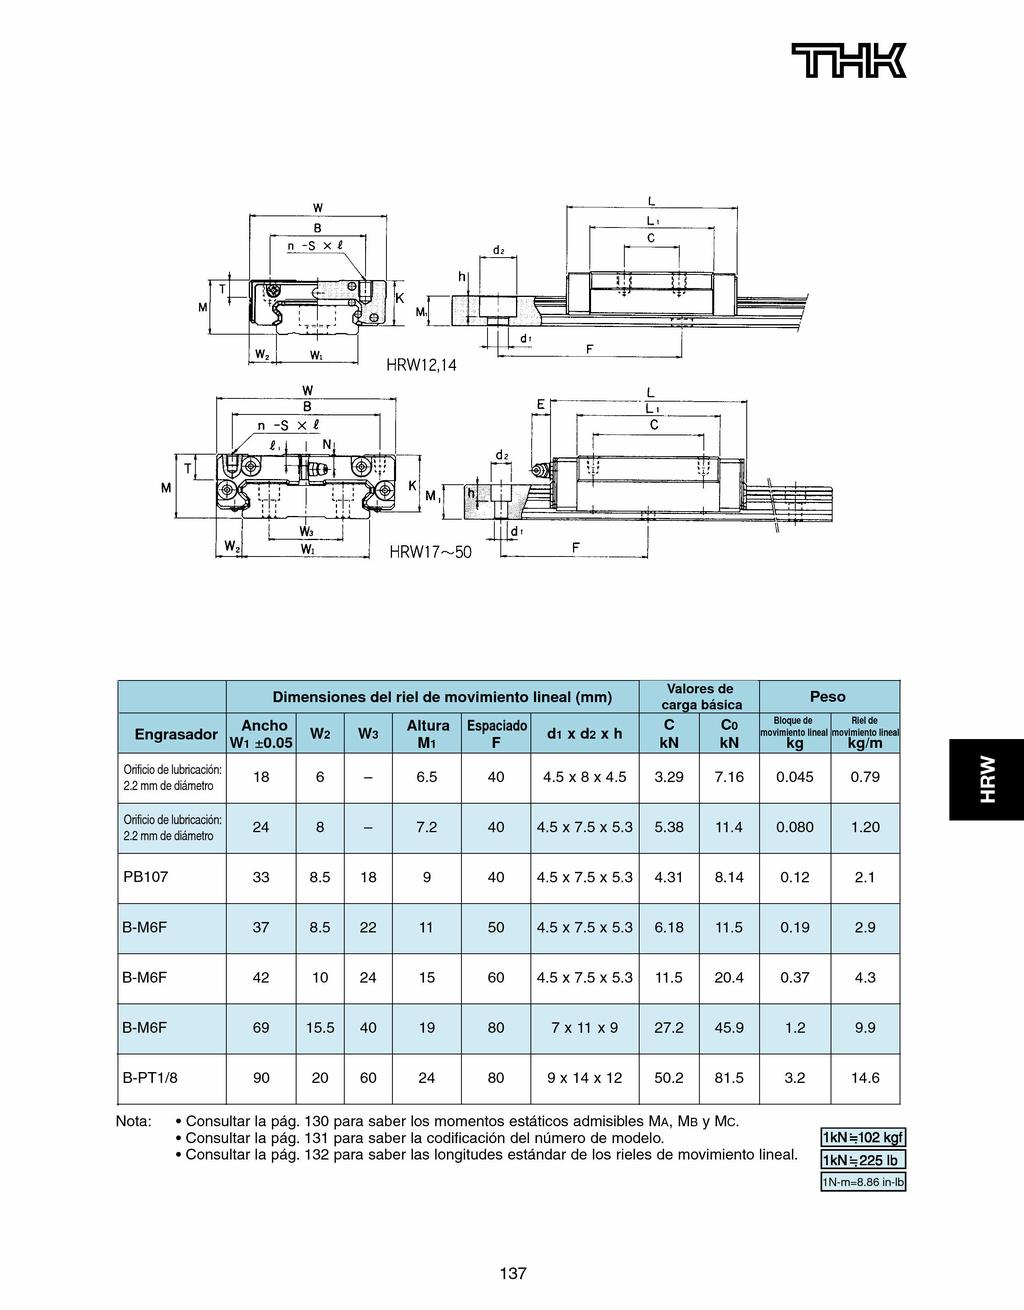 L d2 -TY L d Engrasador Orificio de lubricación" 2.2mm de diámetro Ancho Wi +0.05 Dimensiones del riel de movimiento lineal (mm) 18 6 ẇ.